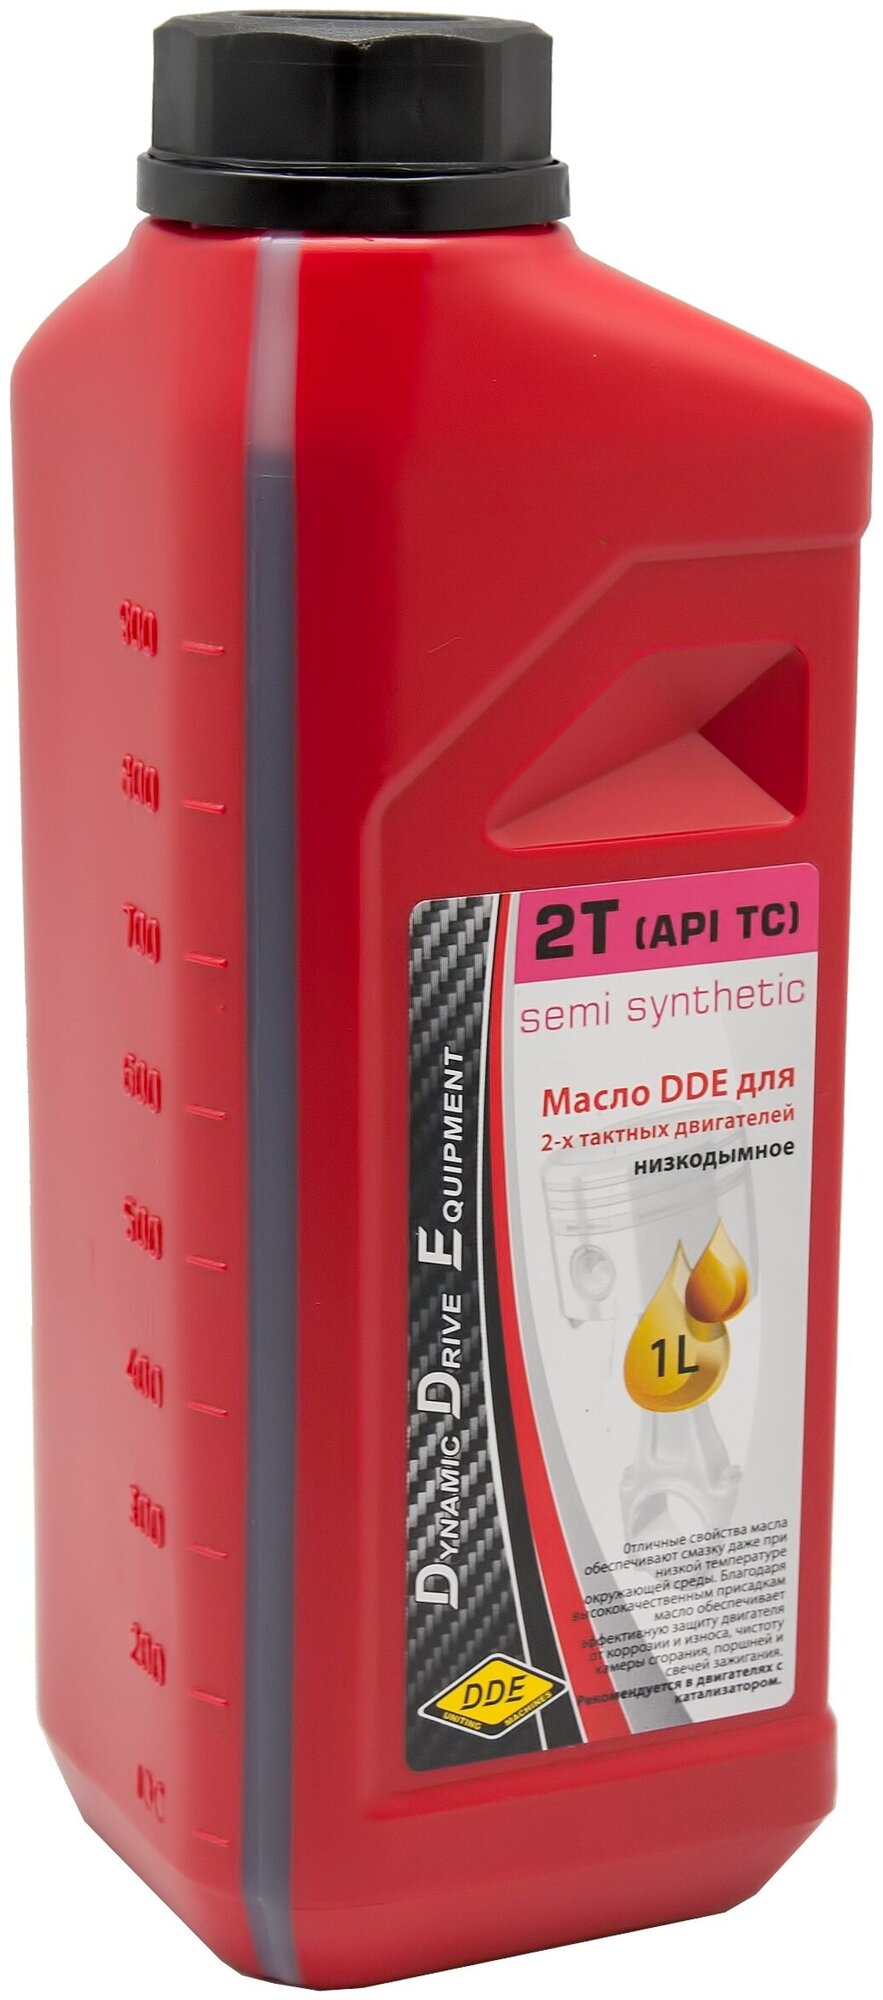 Полусинтетическое моторное масло DDE 2T (API TС)